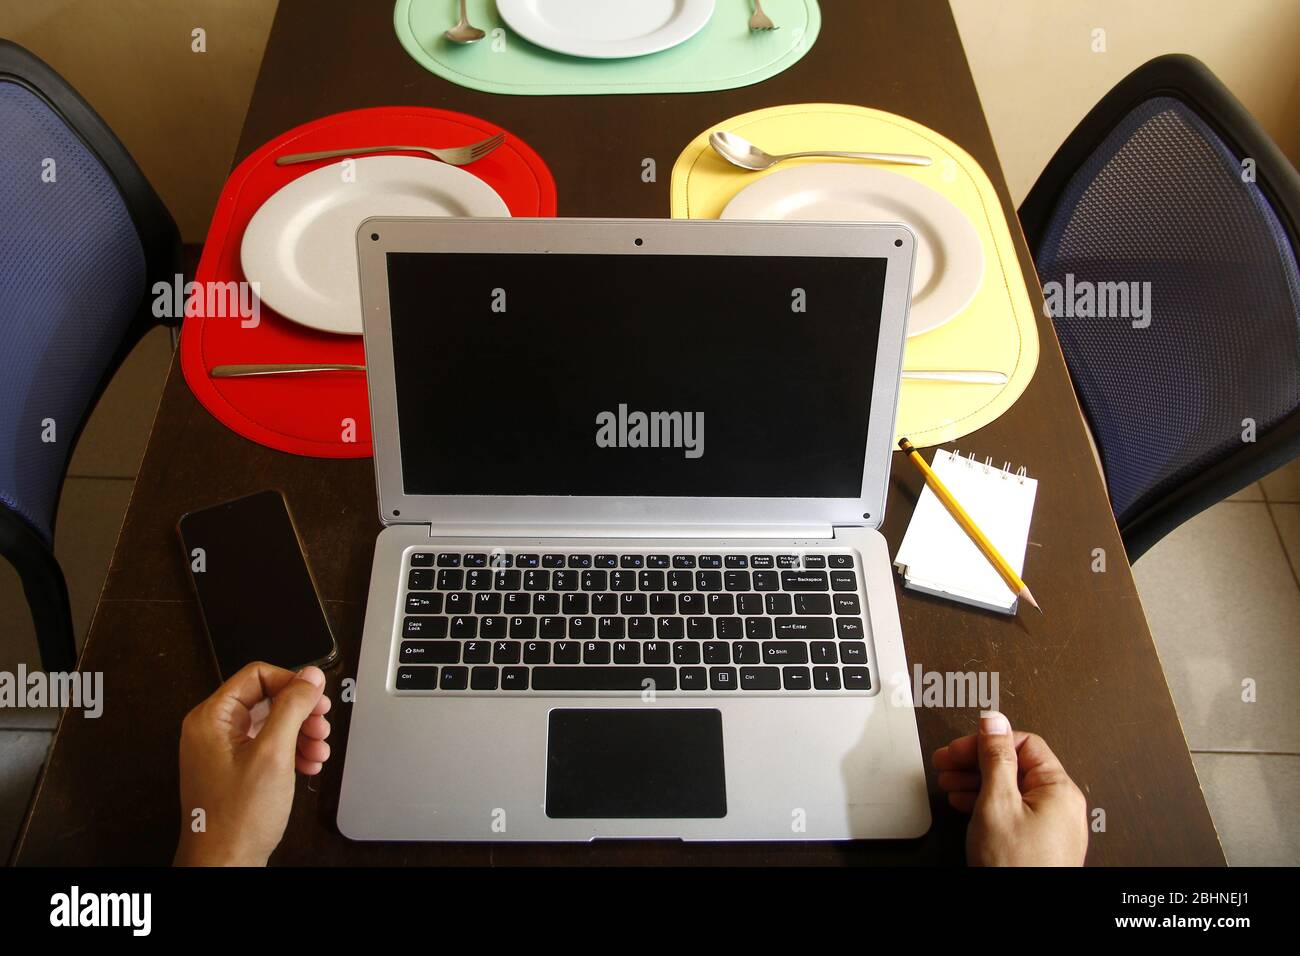 Photo d'ordinateur portable avec saisie des mains dessus, smartphone, ordinateur portable, crayon, assiettes et ustensiles sur une table à manger. Banque D'Images